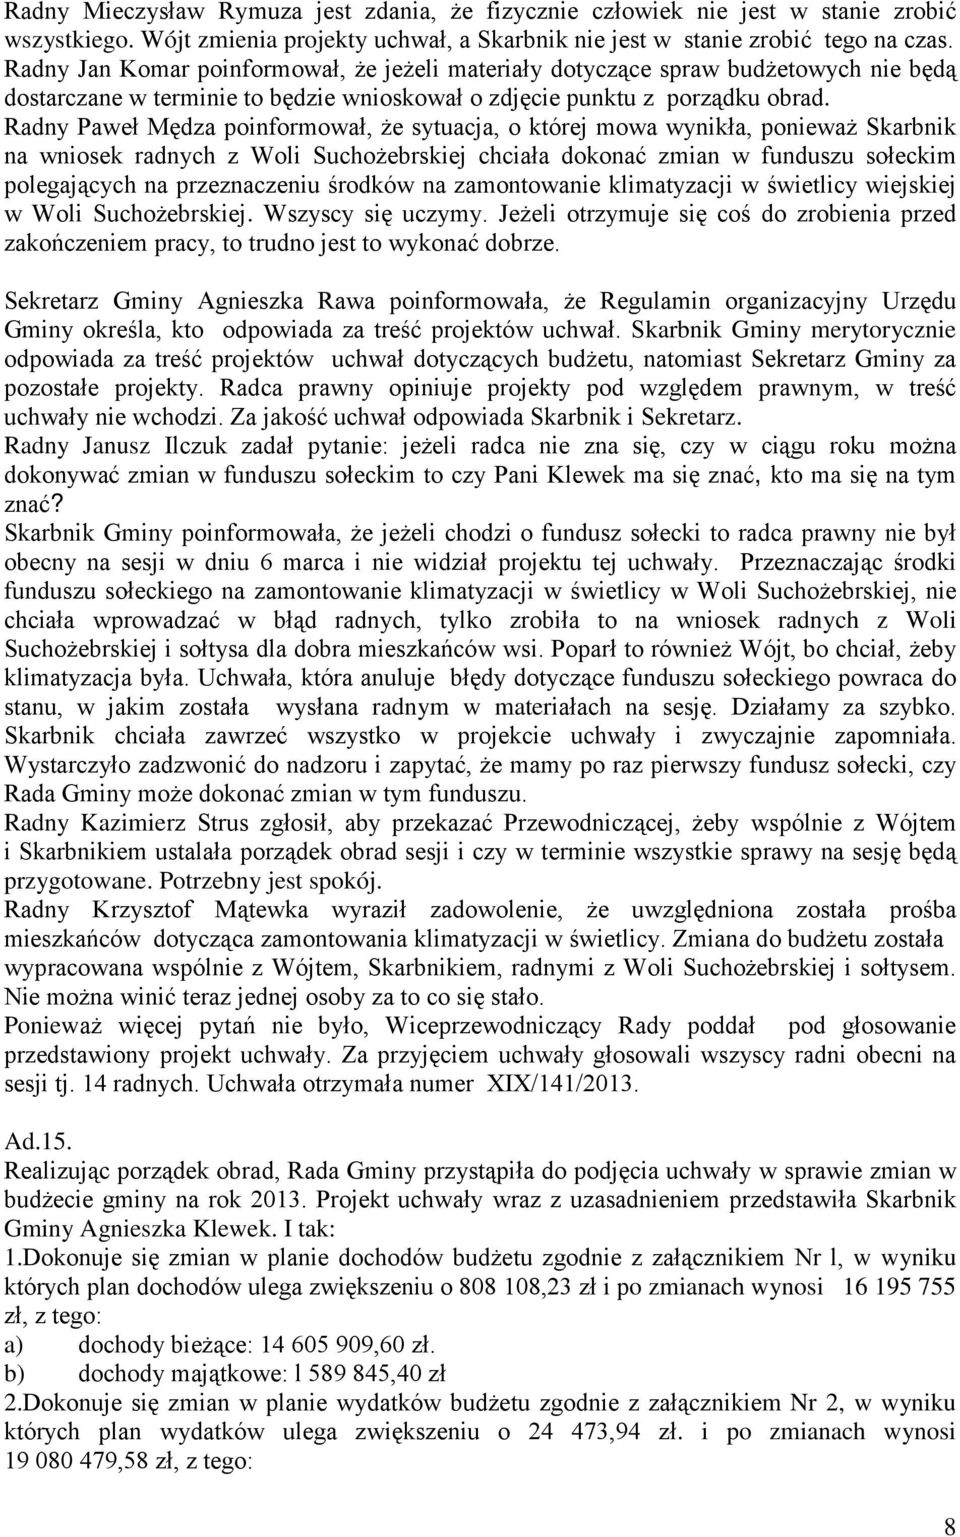 Radny Paweł Mędza poinformował, że sytuacja, o której mowa wynikła, ponieważ Skarbnik na wniosek radnych z Woli Suchożebrskiej chciała dokonać zmian w funduszu sołeckim polegających na przeznaczeniu